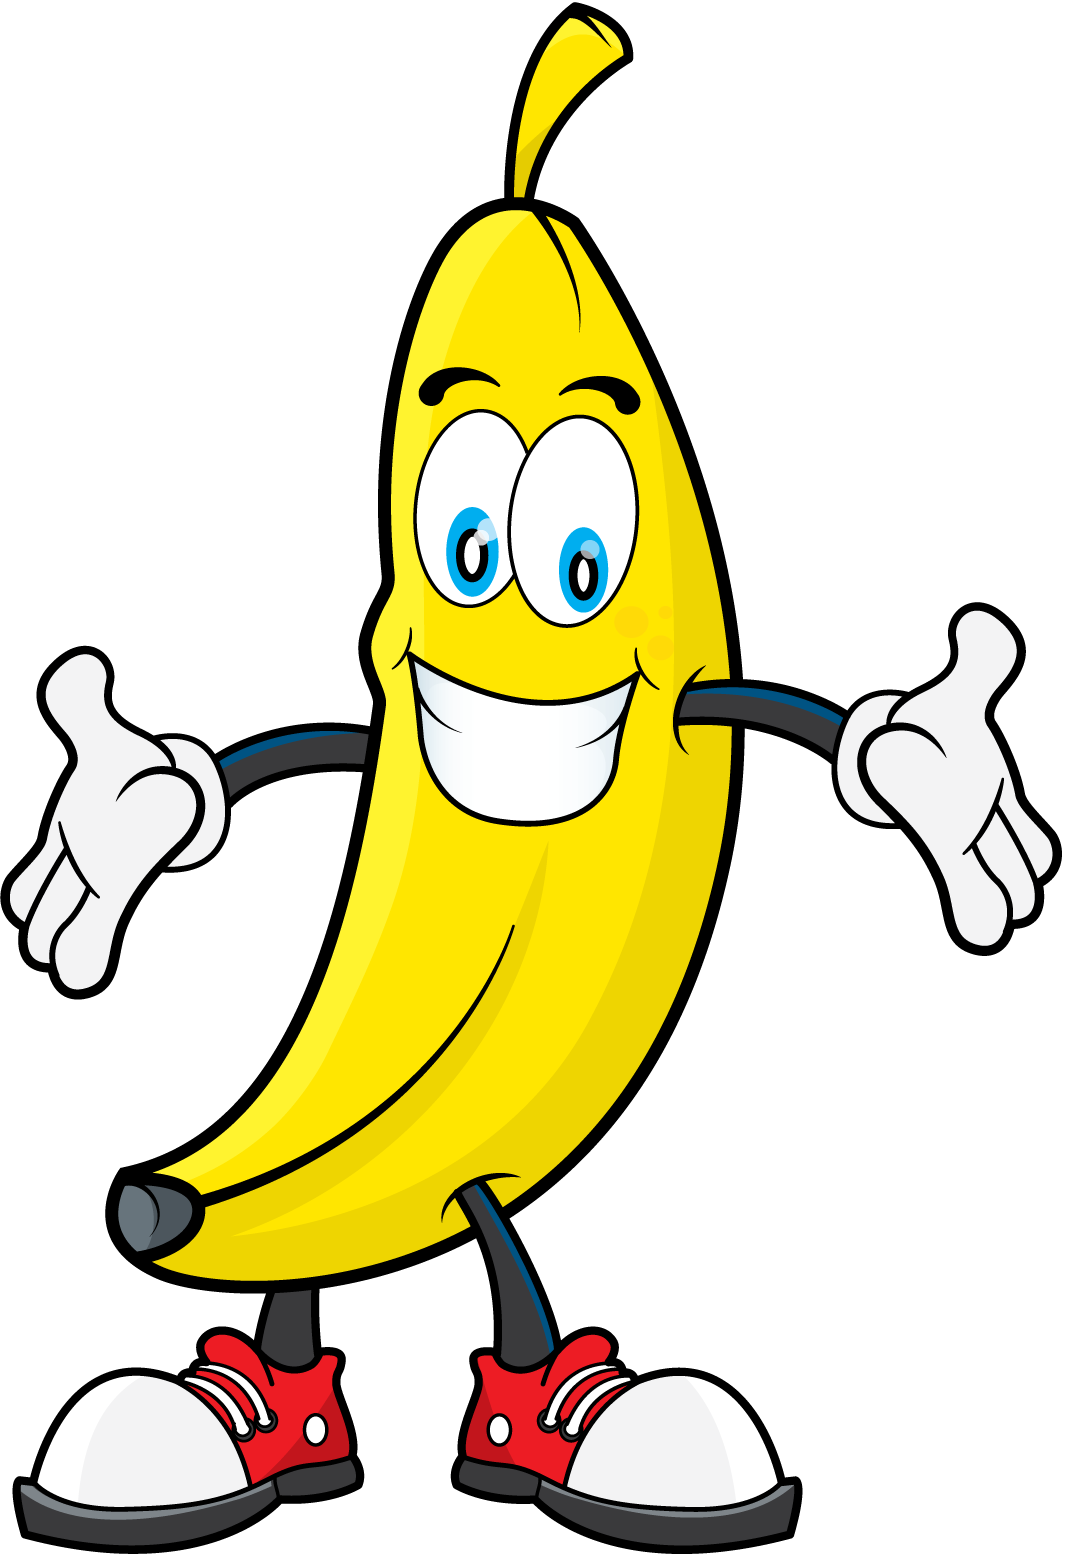 Coloring clipart banana. Free topbanana bananaclipart anything